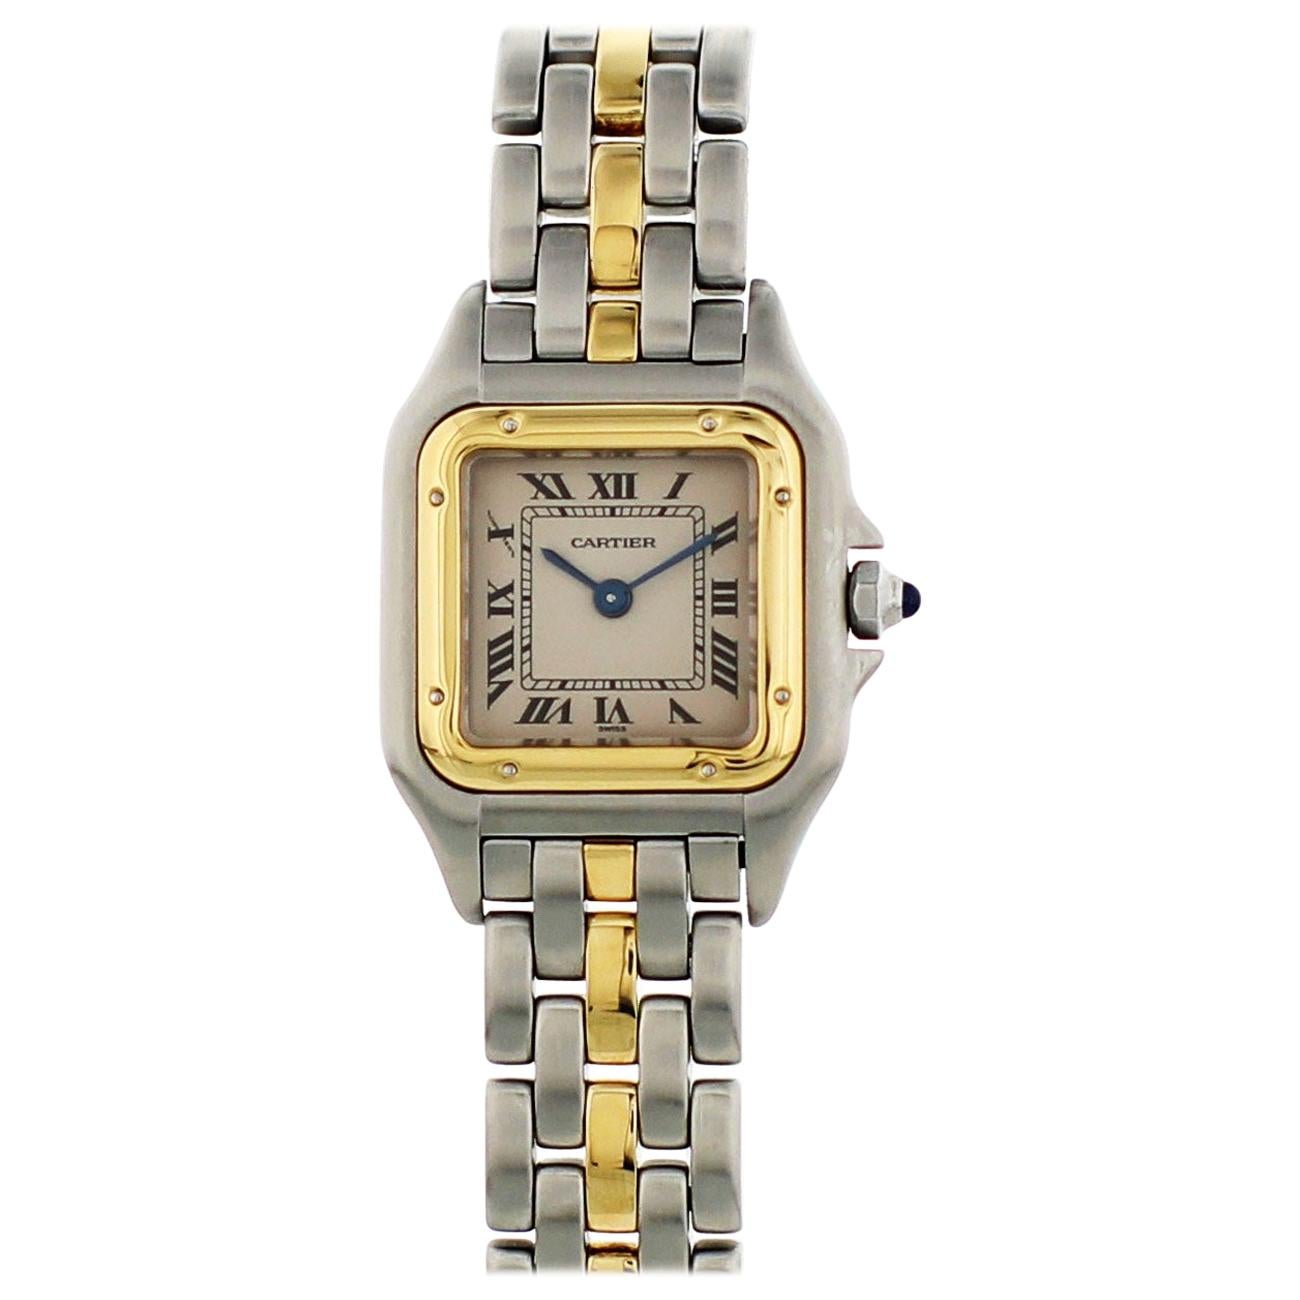 Cartier Panthere Two-Tone 18 Karat Yellow Gold 1120 Ladies Watch